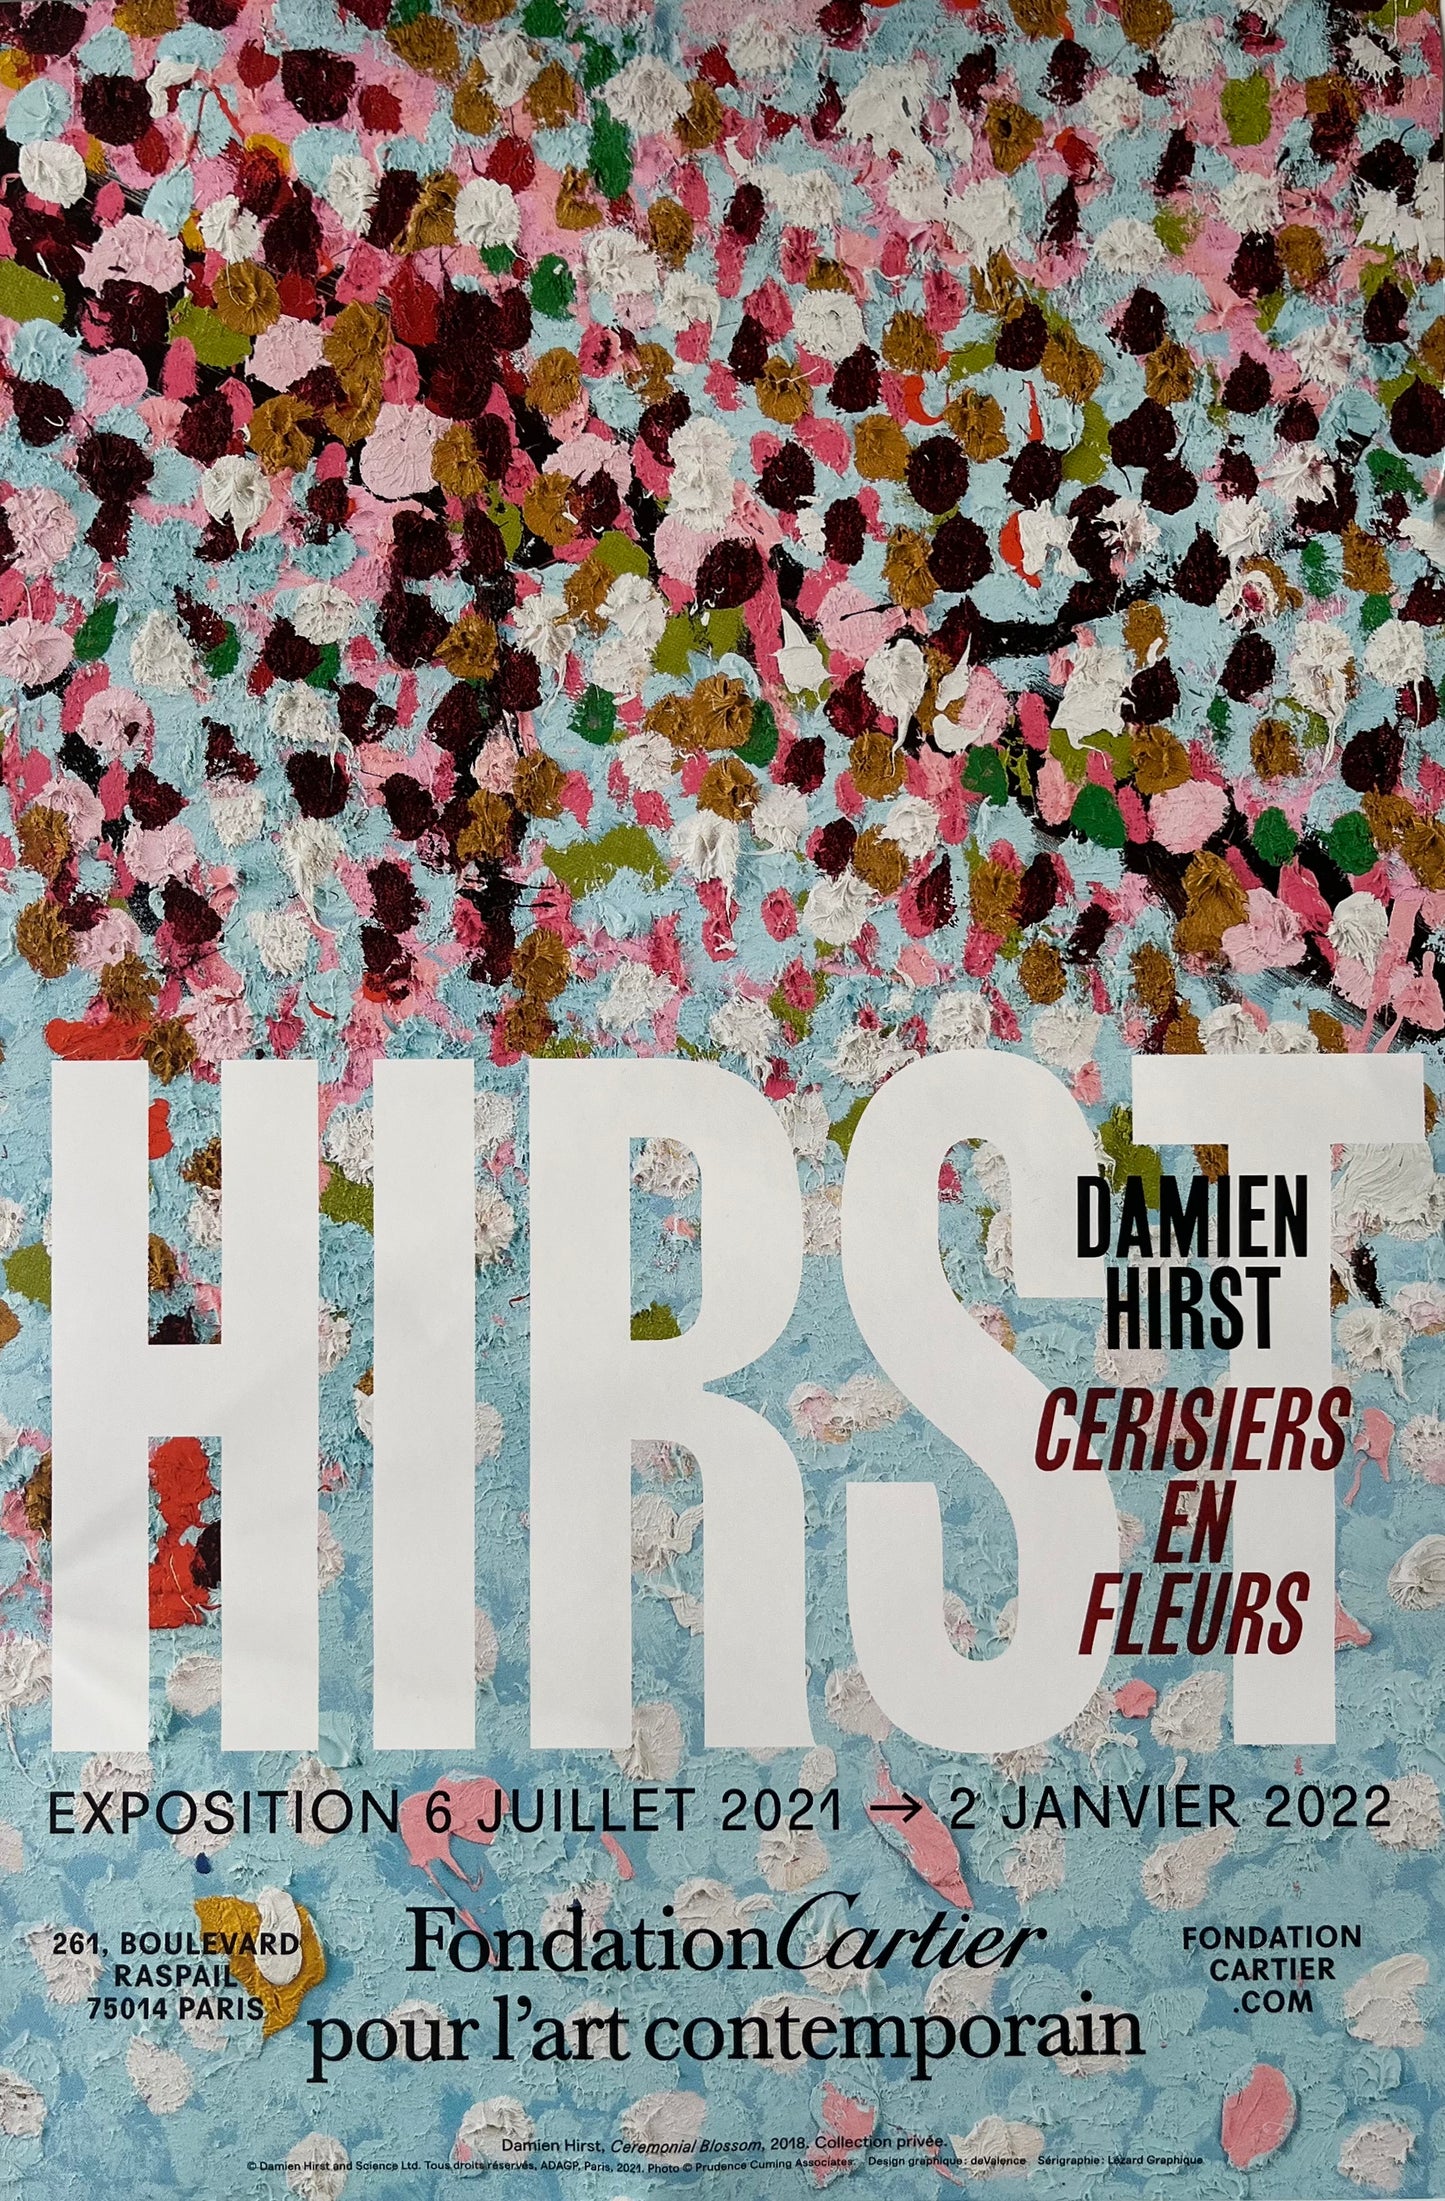 Damien Hirst x Fondation Cartier Paris© “Cherry blossoms”, Original exhibition poster